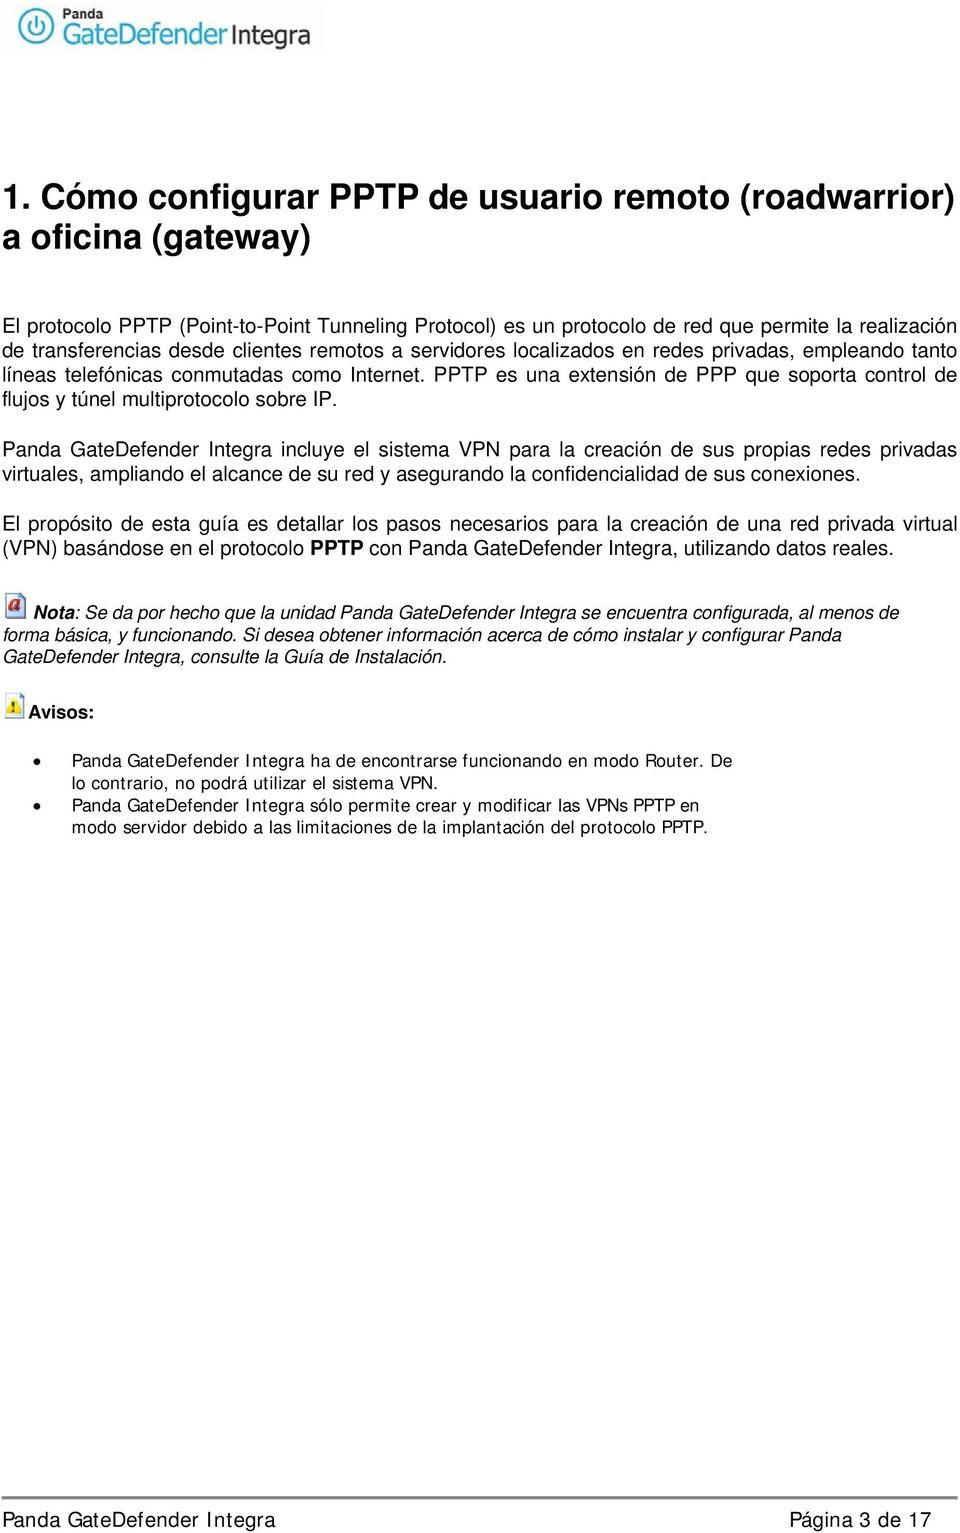 PPTP es una extensión de PPP que soporta control de flujos y túnel multiprotocolo sobre IP.